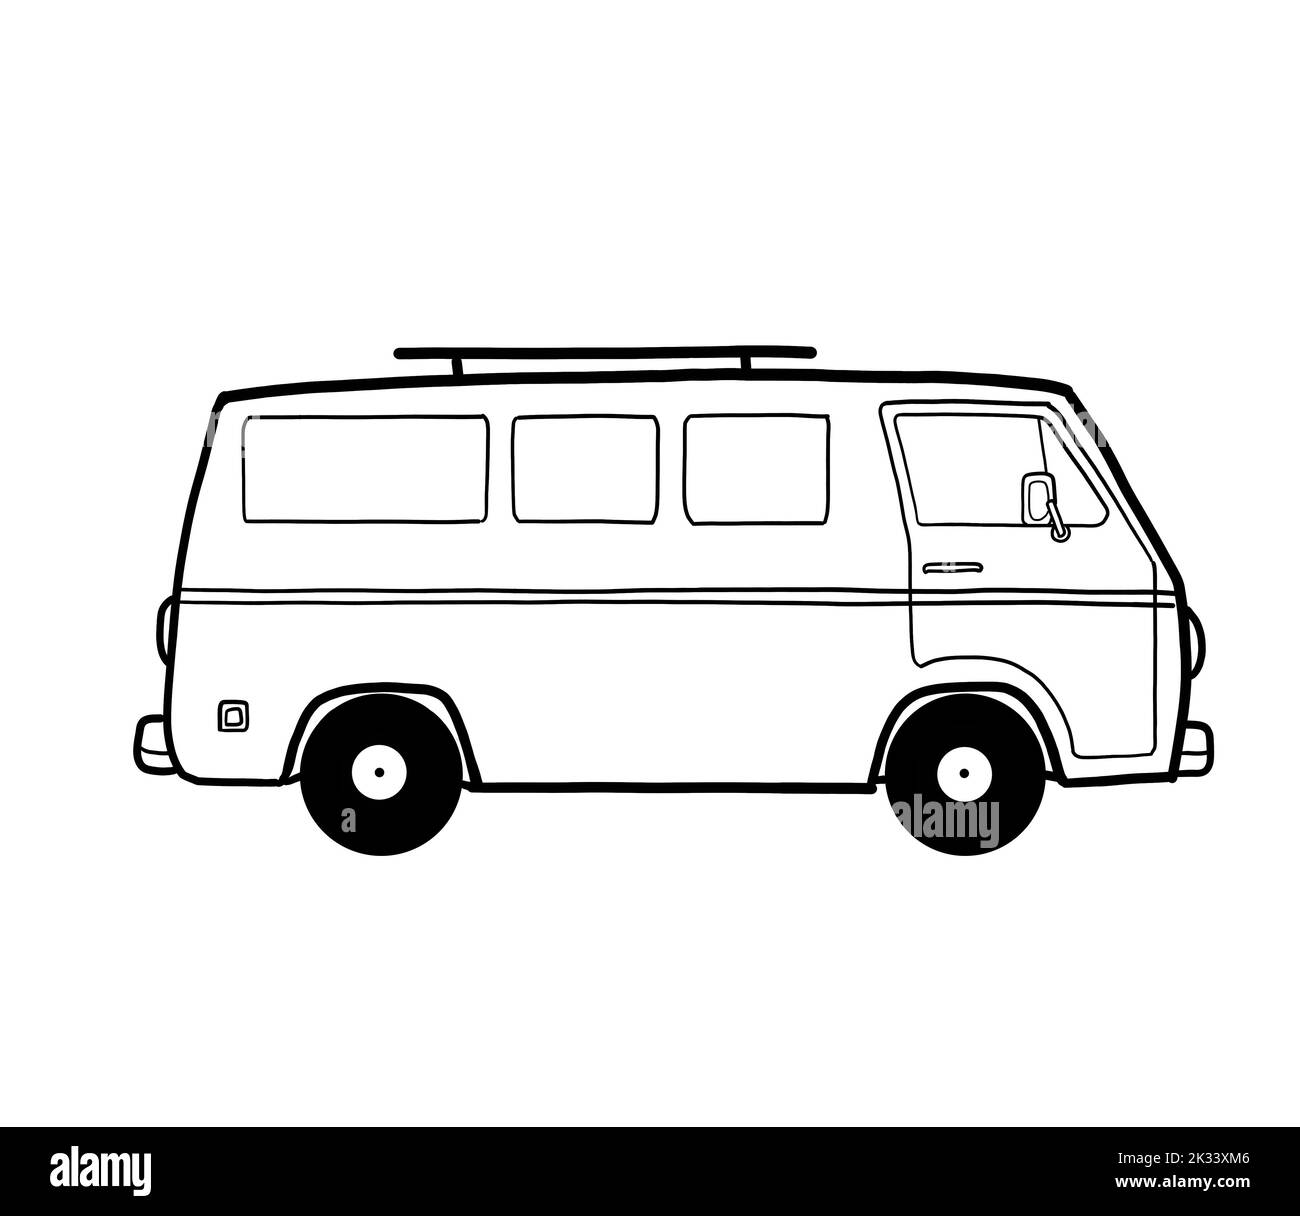 Eine schwarz-weiße Handzeichnung eines Wohnwagens oder Wohnmobils. Van Life Road Trip Freiheit Lifestyle. Stockfoto